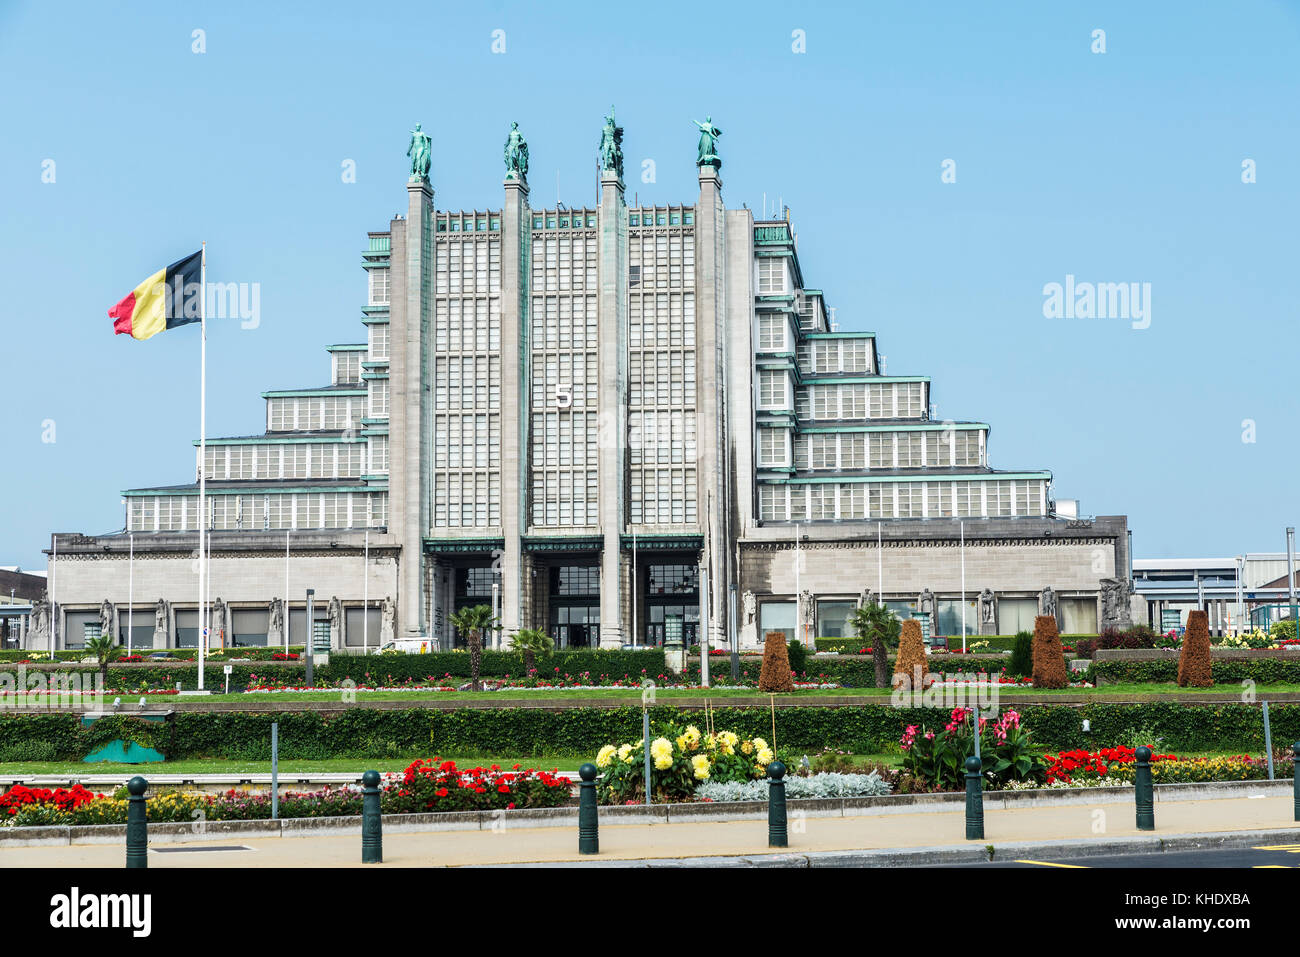 Brüssel, Belgien - 27. August 2017: Das Grand Palais, der große Pavillon oder die Hauptausstellung Pavillon in Brüssel, Belgien Stockfoto